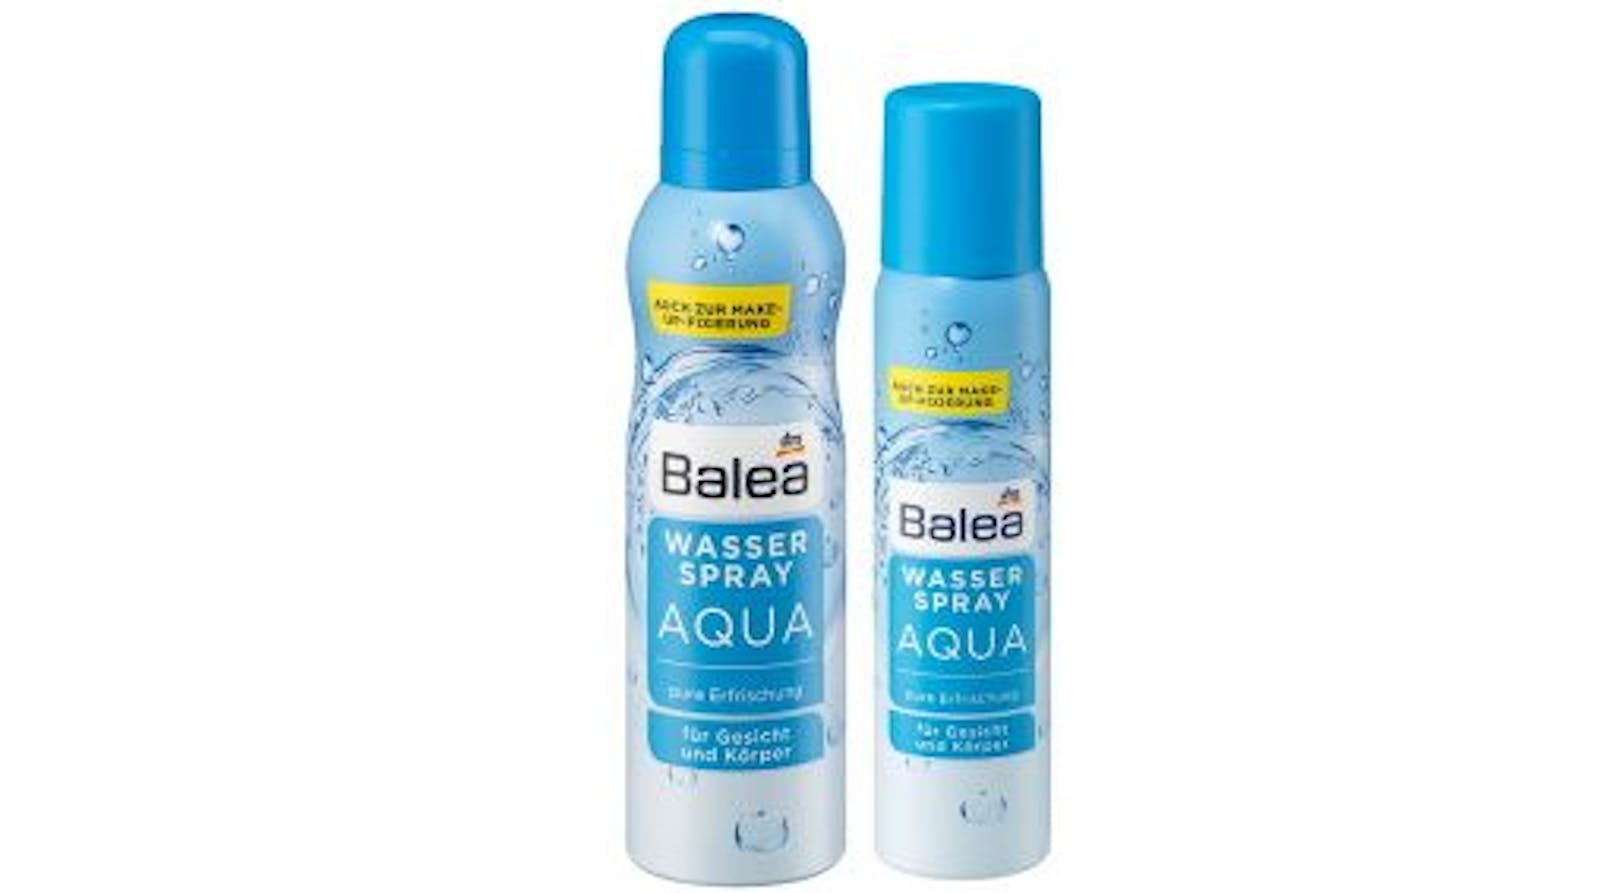 Balea Wasserspray AQUA (150 ml und 75 ml)